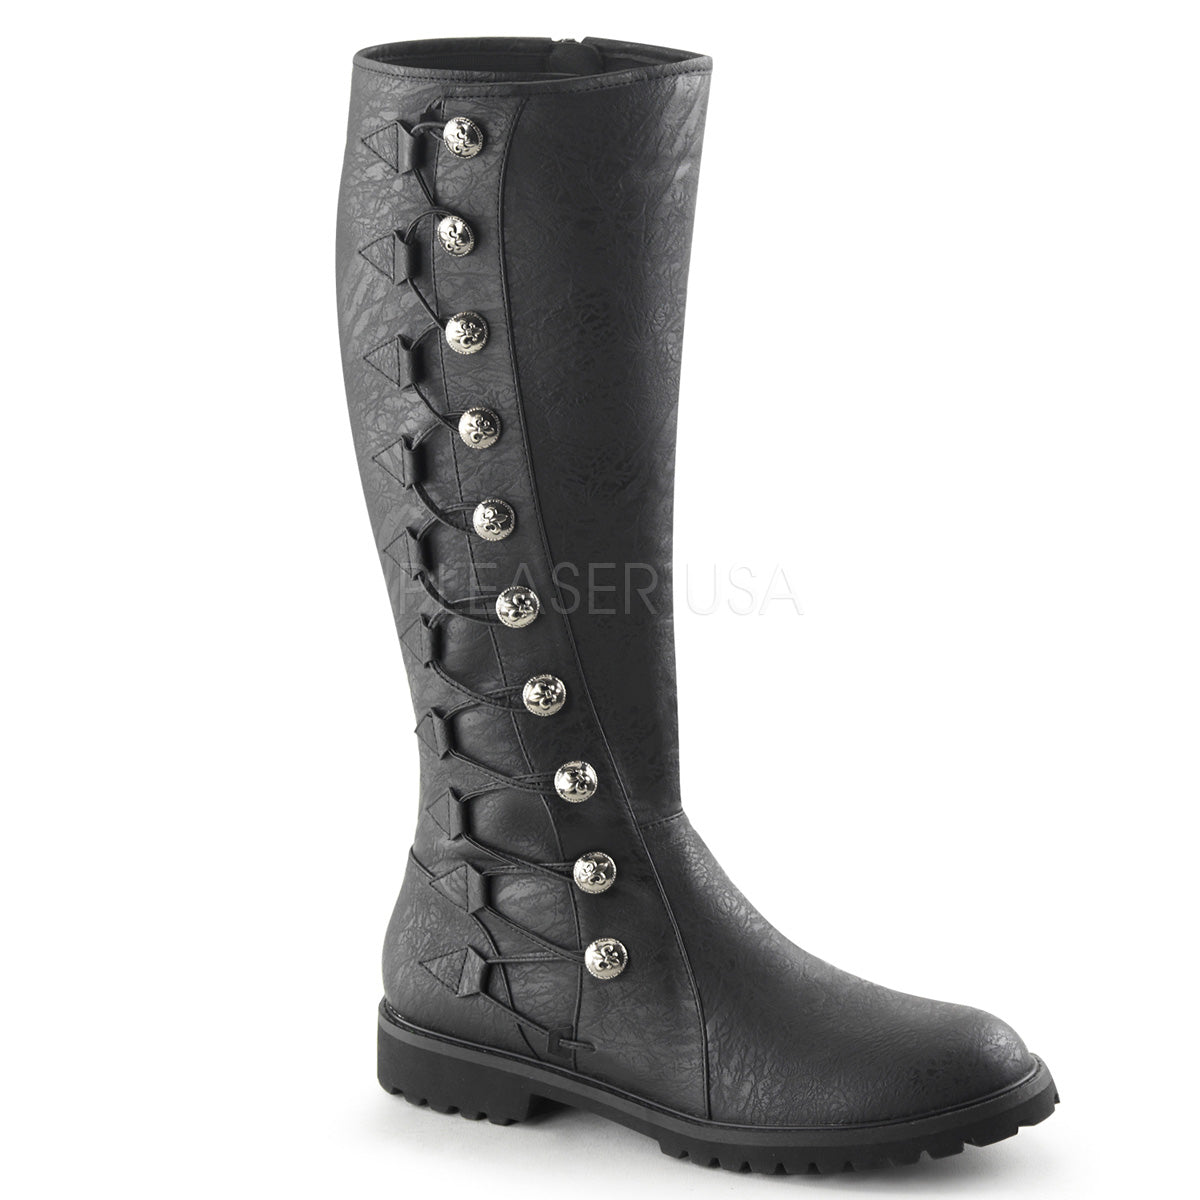 Steampunk Gentleman boots